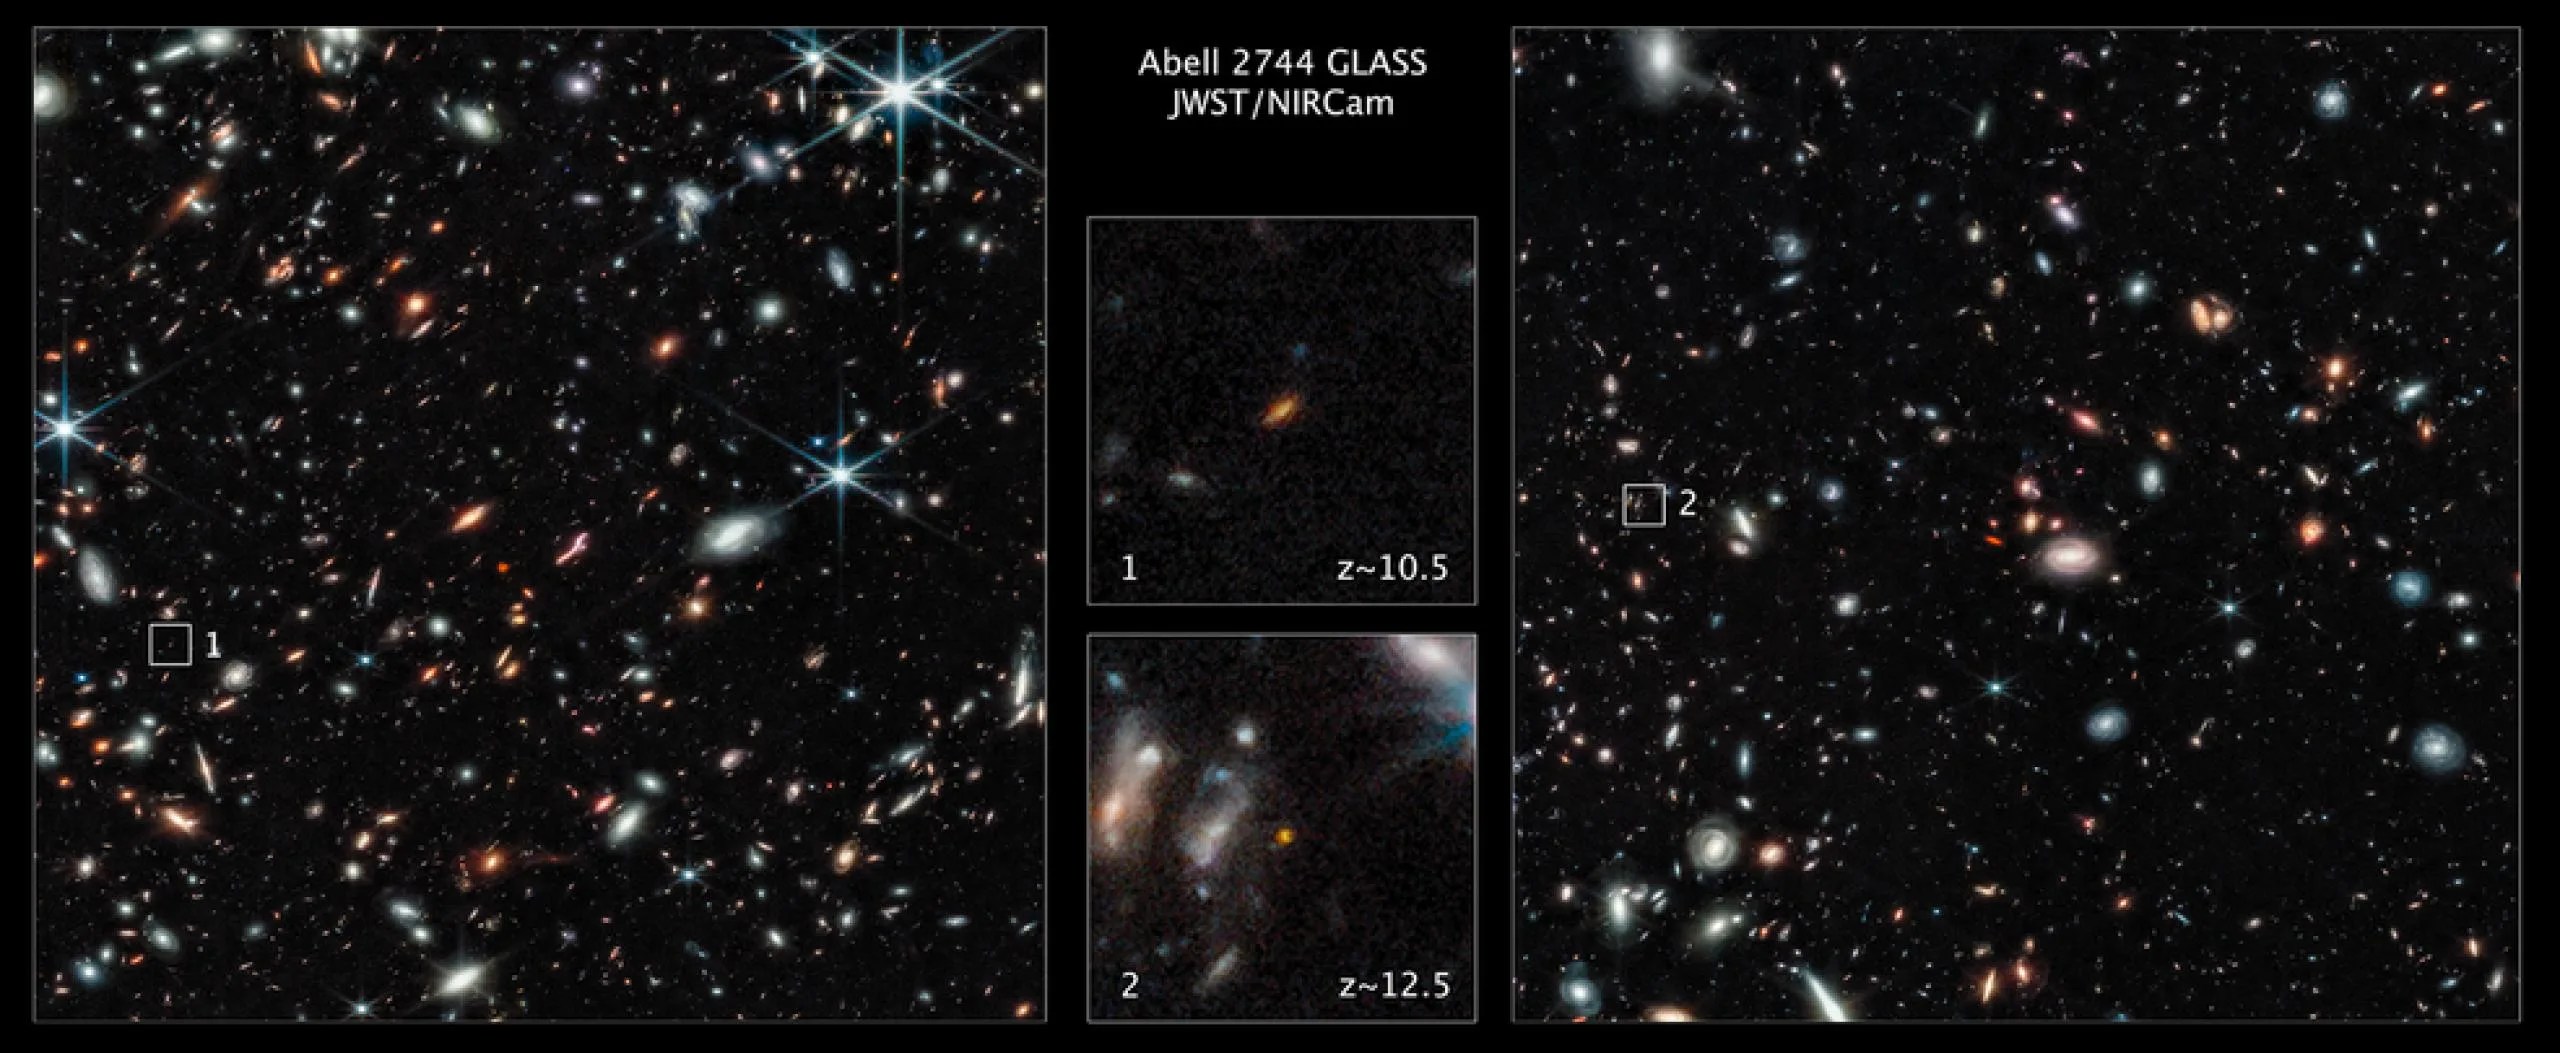 Dos de las galaxias más lejanas observadas hasta la fecha son captadas en estas imágenes del telescopio espacial Webb de las regiones exteriores del cúmulo de galaxias gigantes Abell 2744. Las galaxias no están en el interior del cúmulo, sino a muchos miles de millones de años luz por detrás de este. La galaxia marcada con (1) existió solo 450 millones de años después del Big Bang. La galaxia marcada como (2) existió 350 millones de años después del Big Bang. Ambas se ven muy cerca en el tiempo del Big Bang